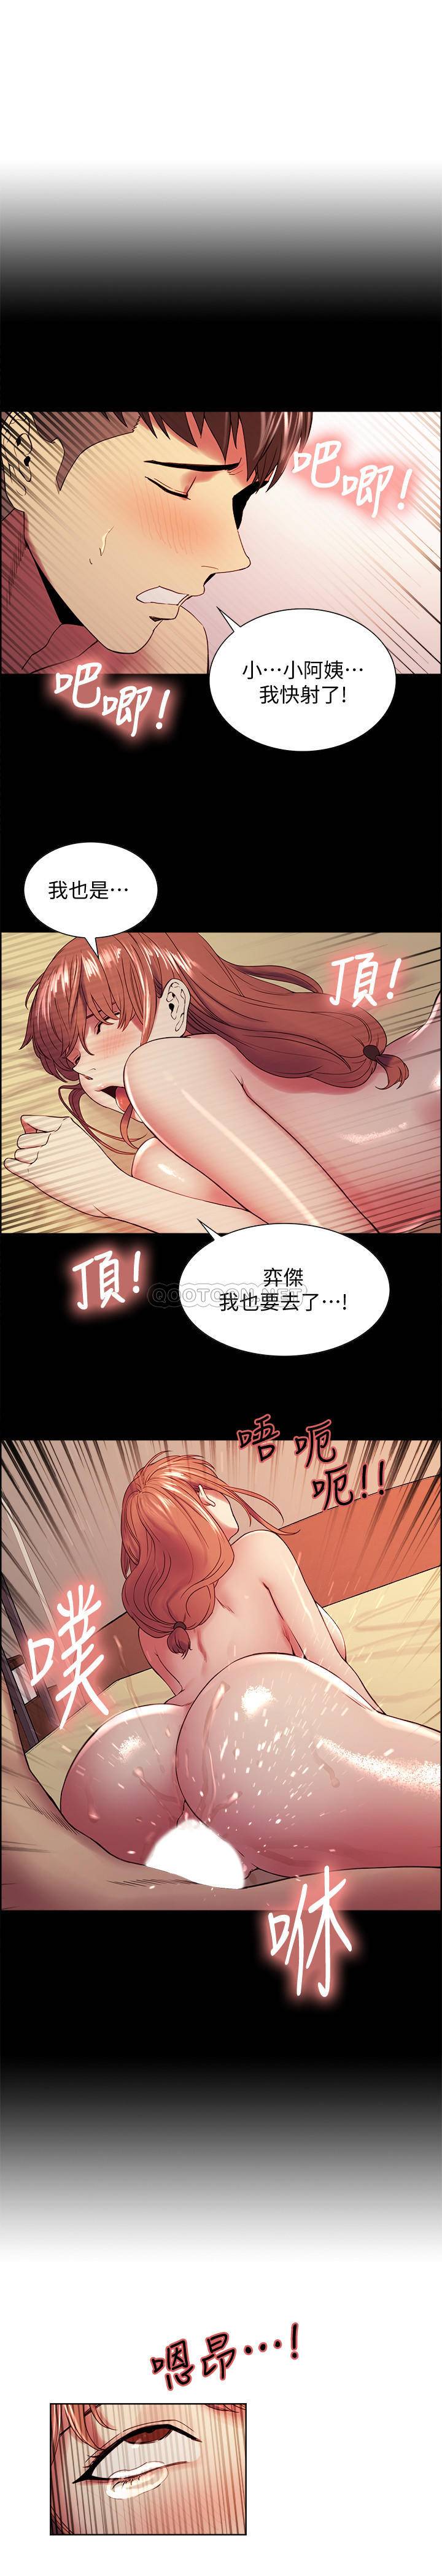 《室友招募中》漫画 第36话 - 因弈杰内裤而兴奋的宥琳